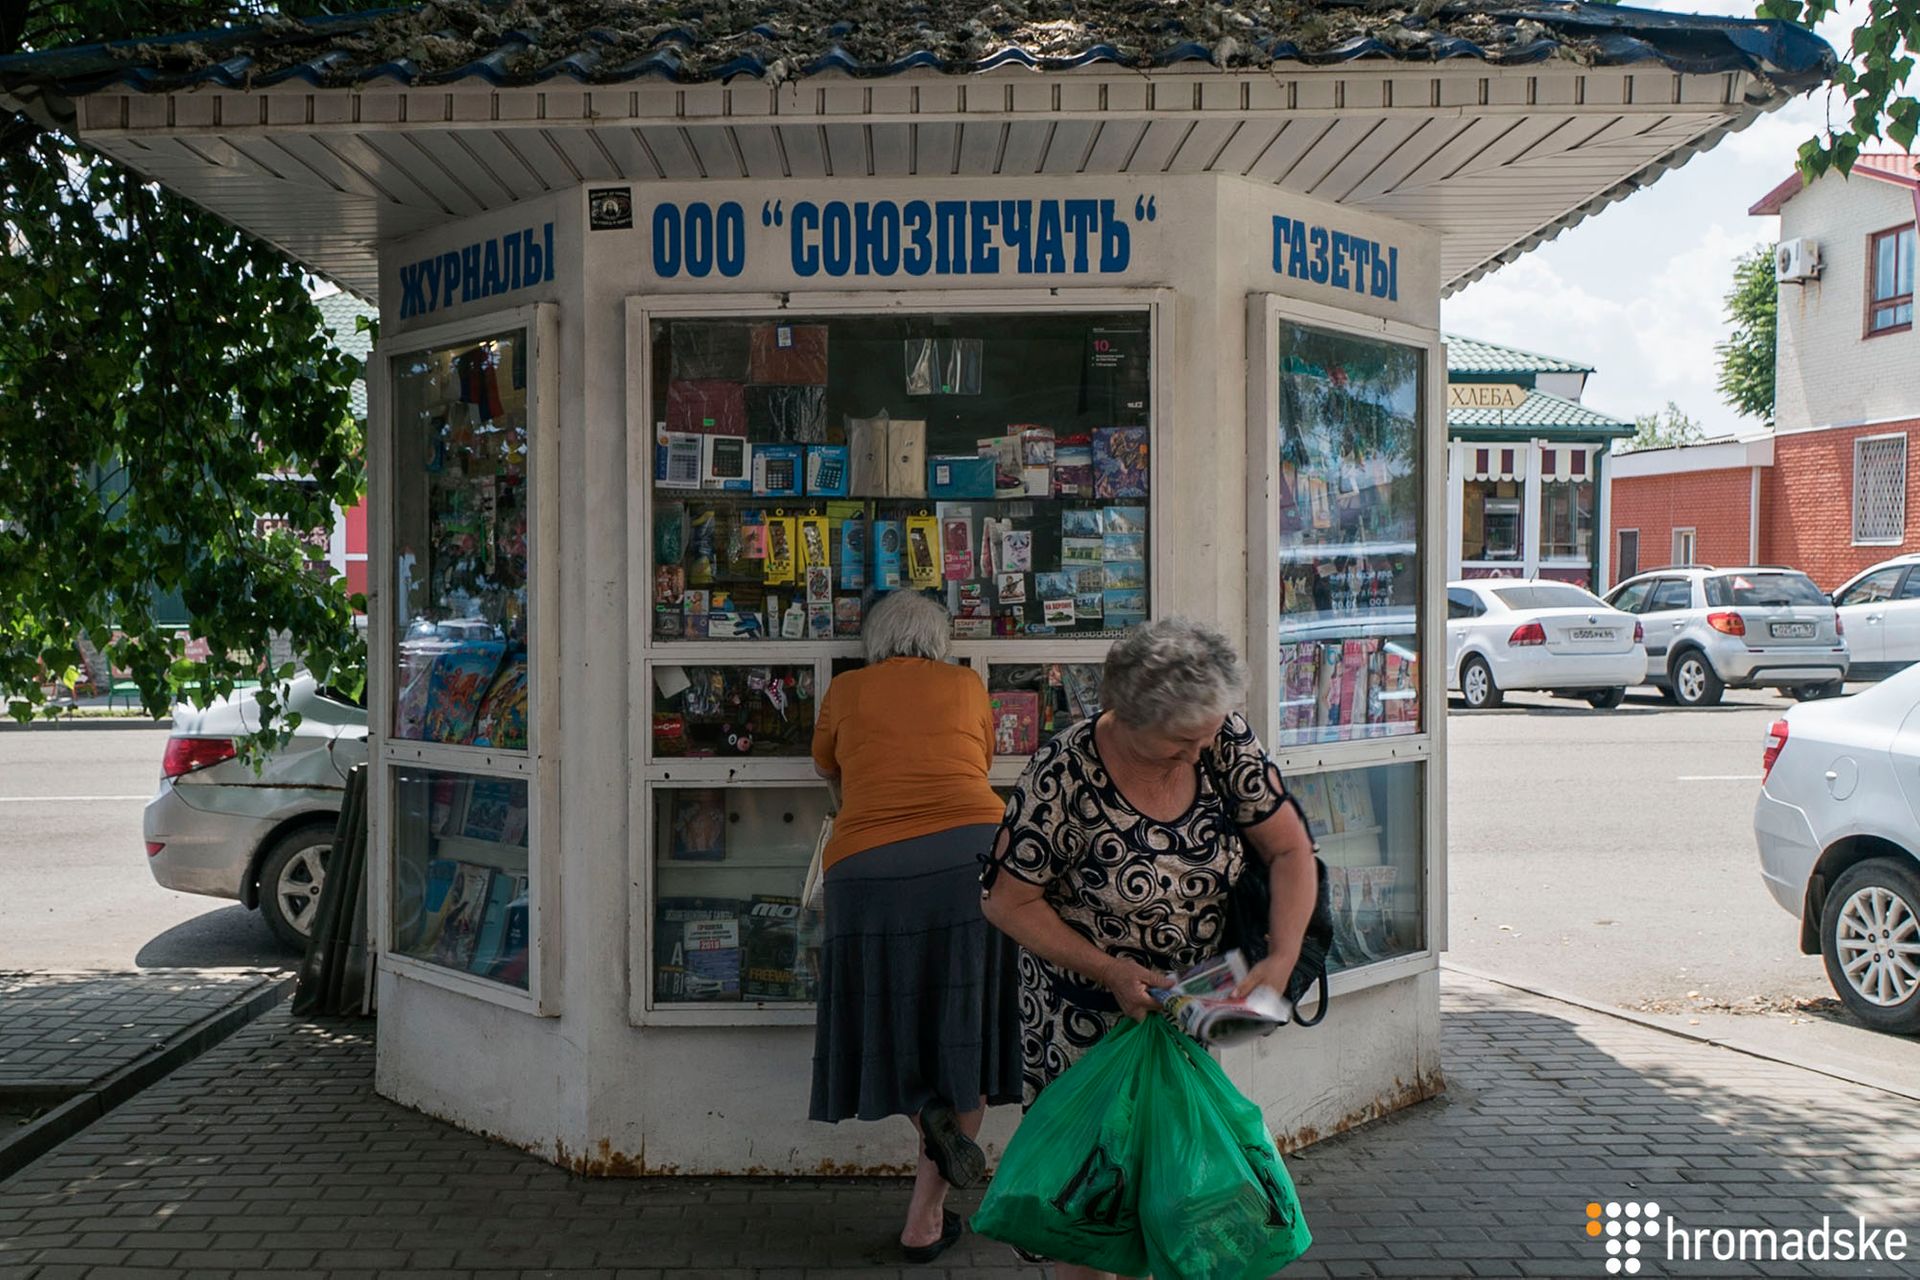 Новошахтинск, Ростовская область, Россия, 18 июня 2019 года. Фото: Александр Кохан/Громадское